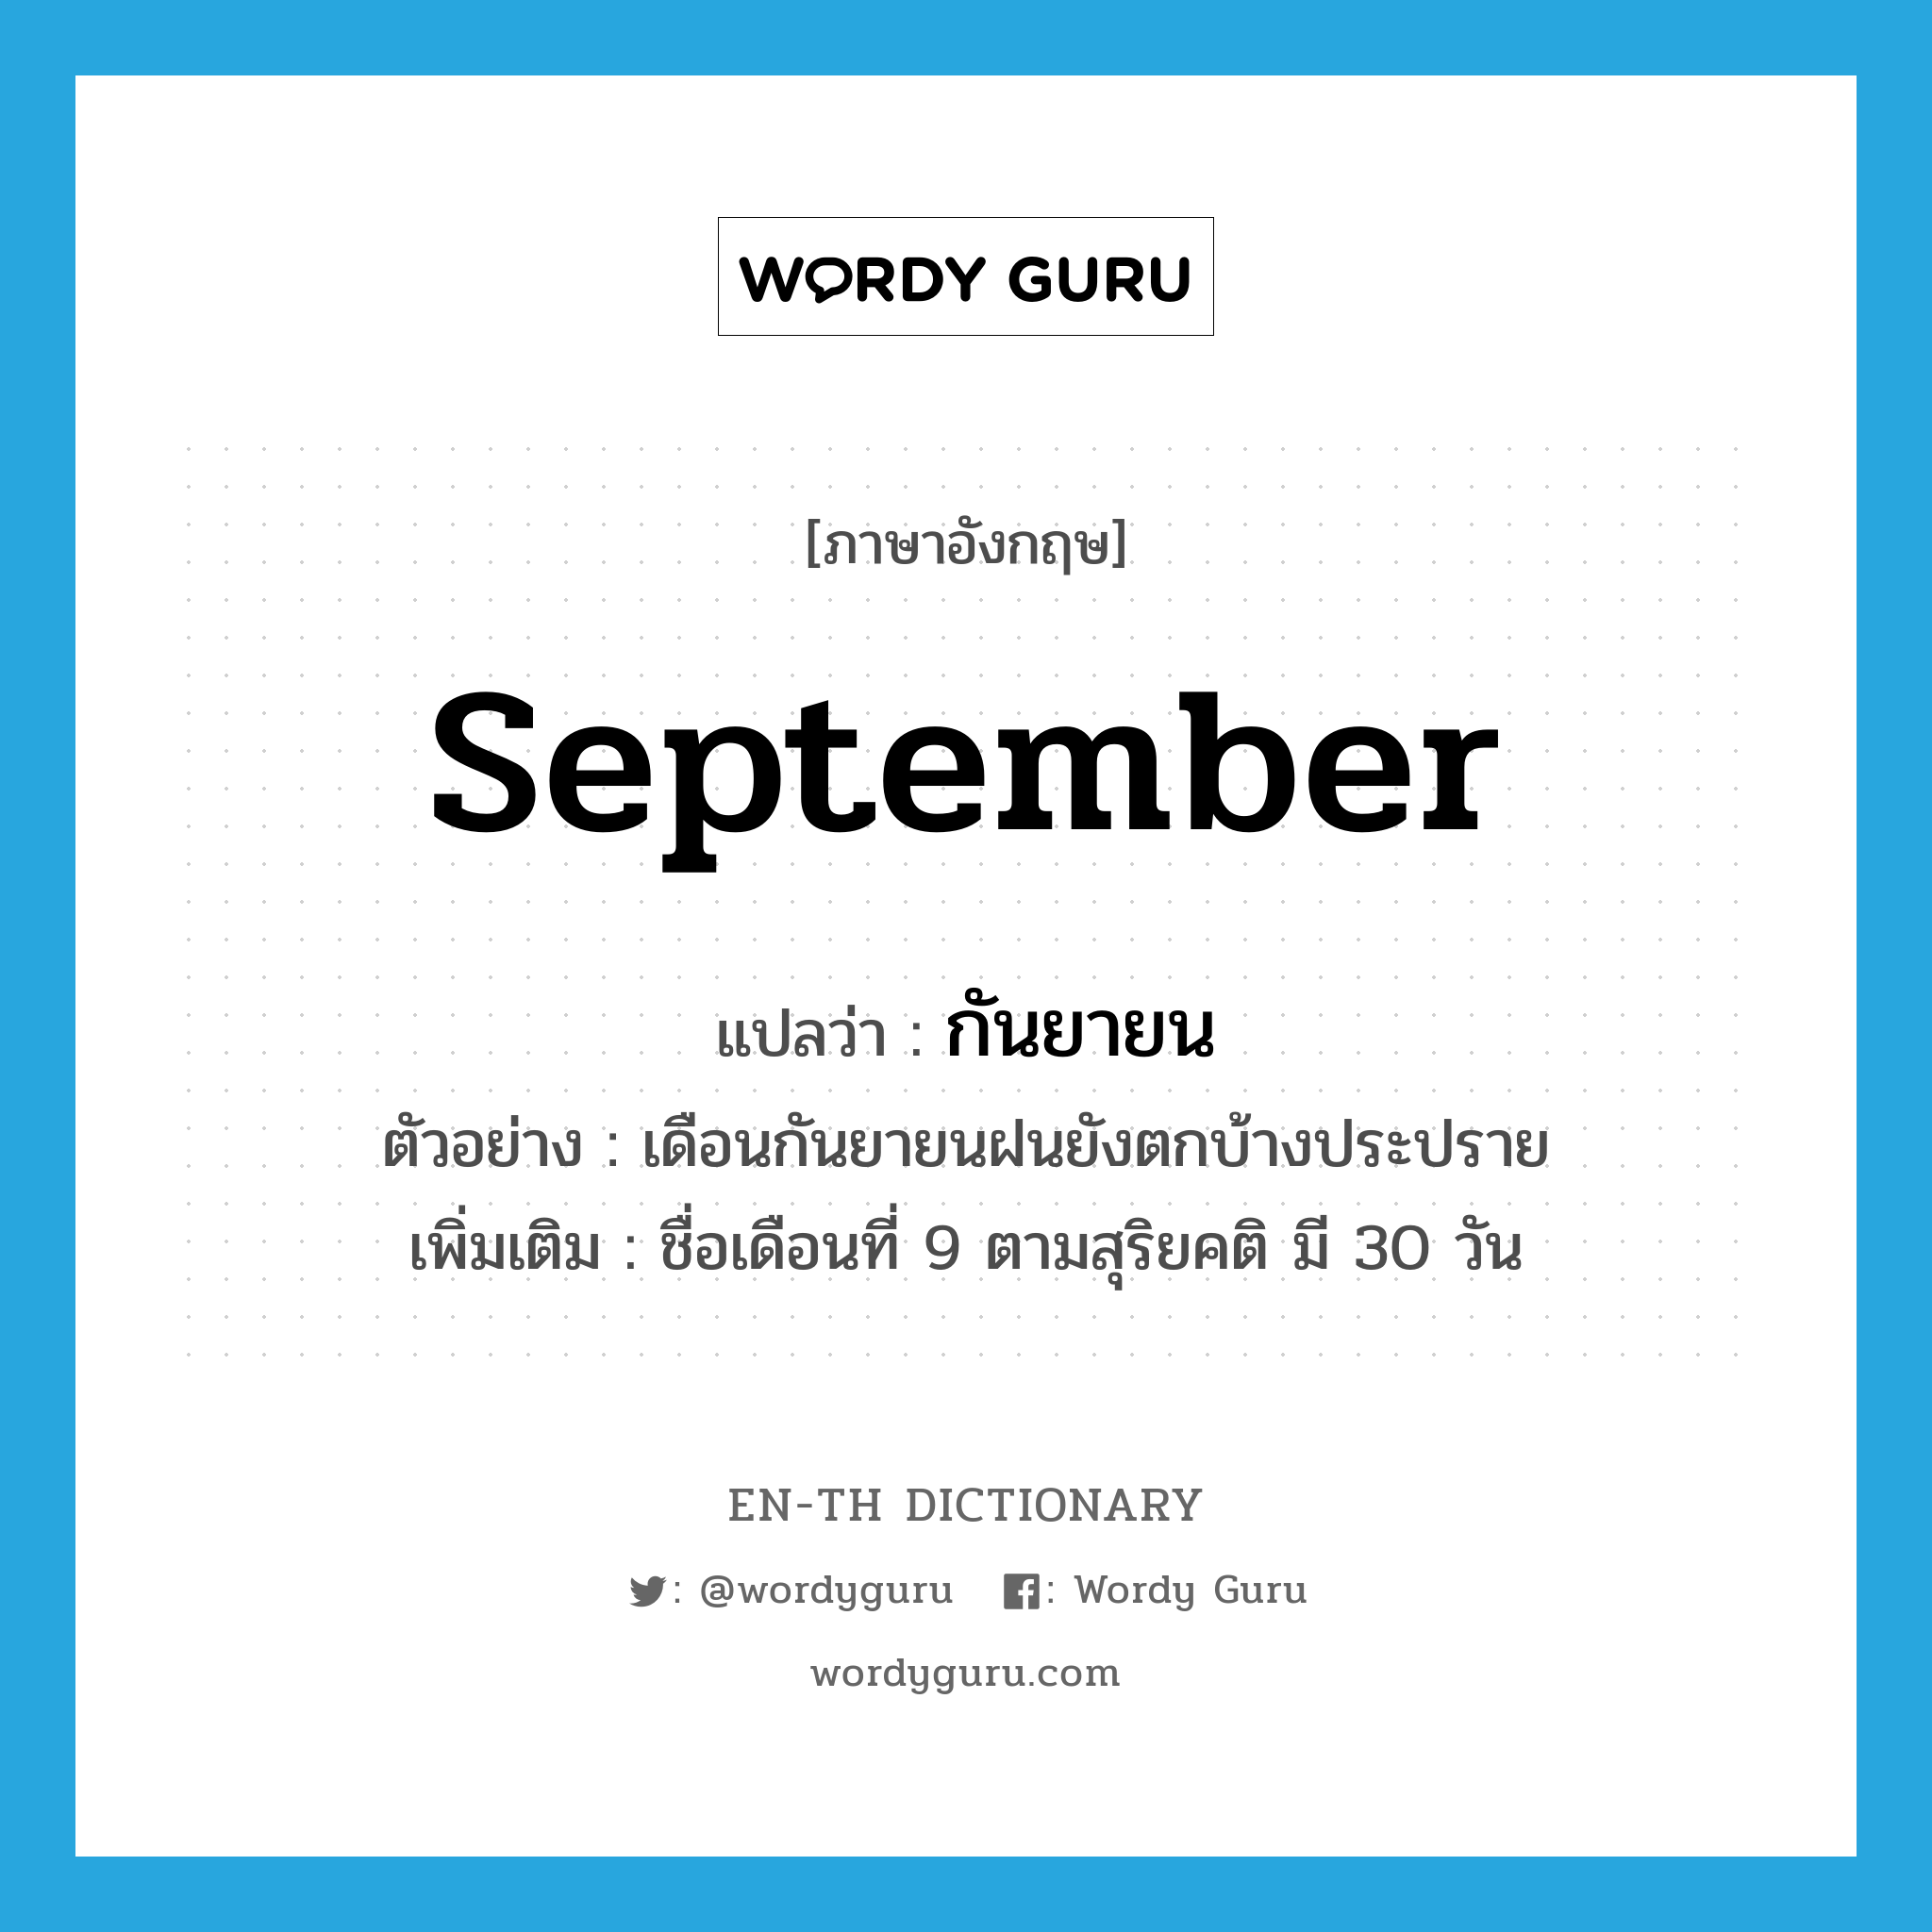 กันยายน ภาษาอังกฤษ?, คำศัพท์ภาษาอังกฤษ กันยายน แปลว่า September ประเภท N ตัวอย่าง เดือนกันยายนฝนยังตกบ้างประปราย เพิ่มเติม ชื่อเดือนที่ 9 ตามสุริยคติ มี 30 วัน หมวด N